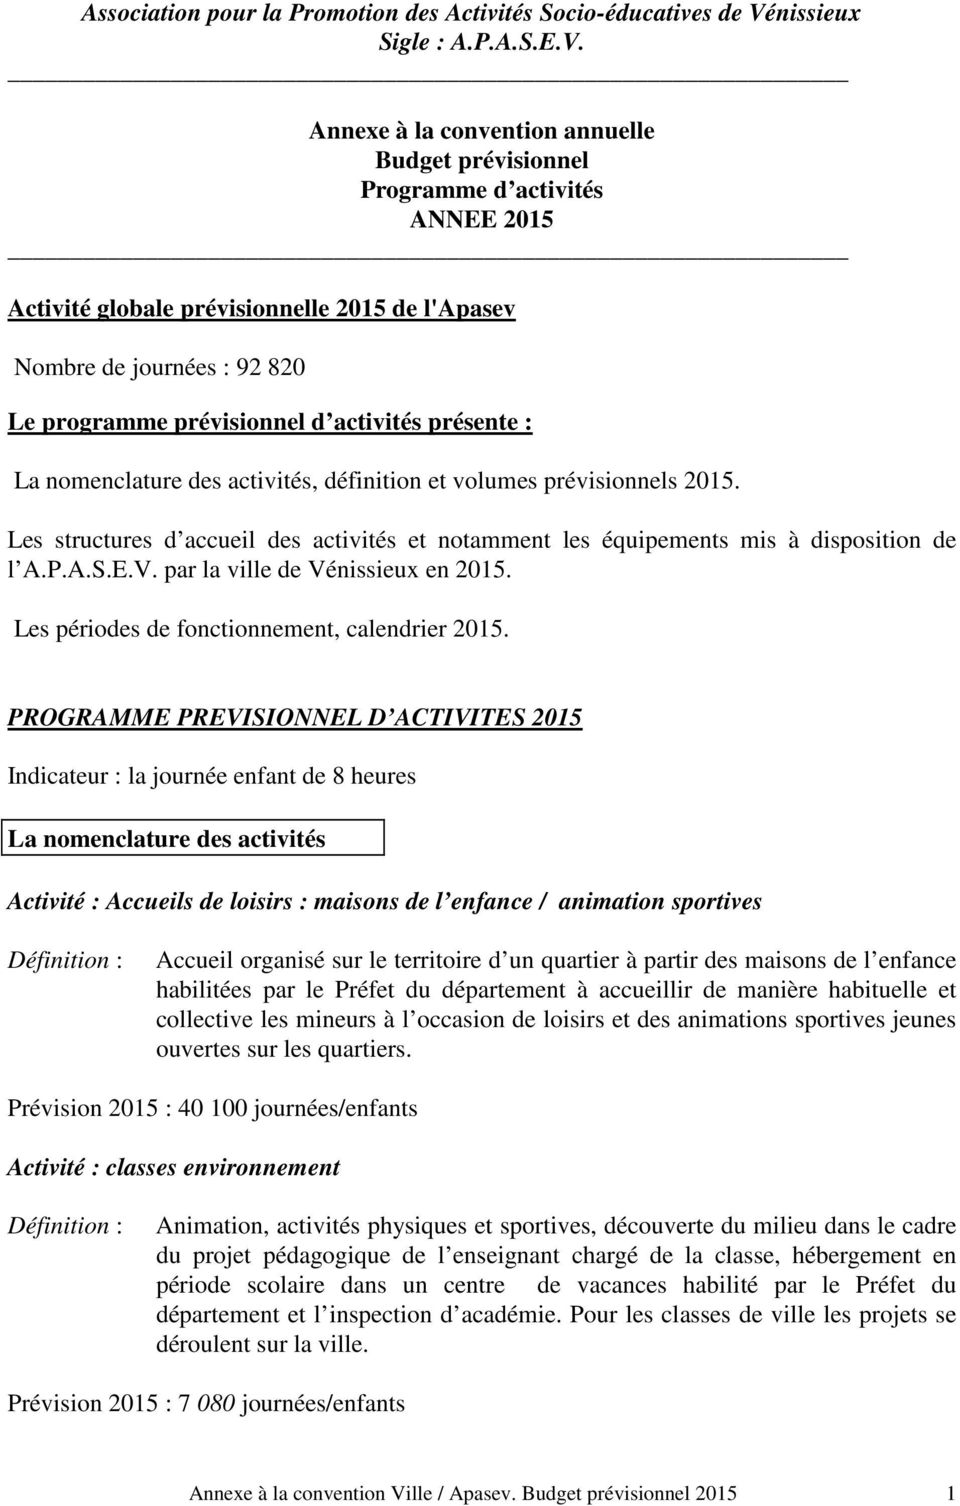 Annexe à la convention annuelle Budget prévisionnel Programme d activités ANNEE 2015 Activité globale prévisionnelle 2015 de l'apasev Nombre de journées : 92 820 Le programme prévisionnel d activités